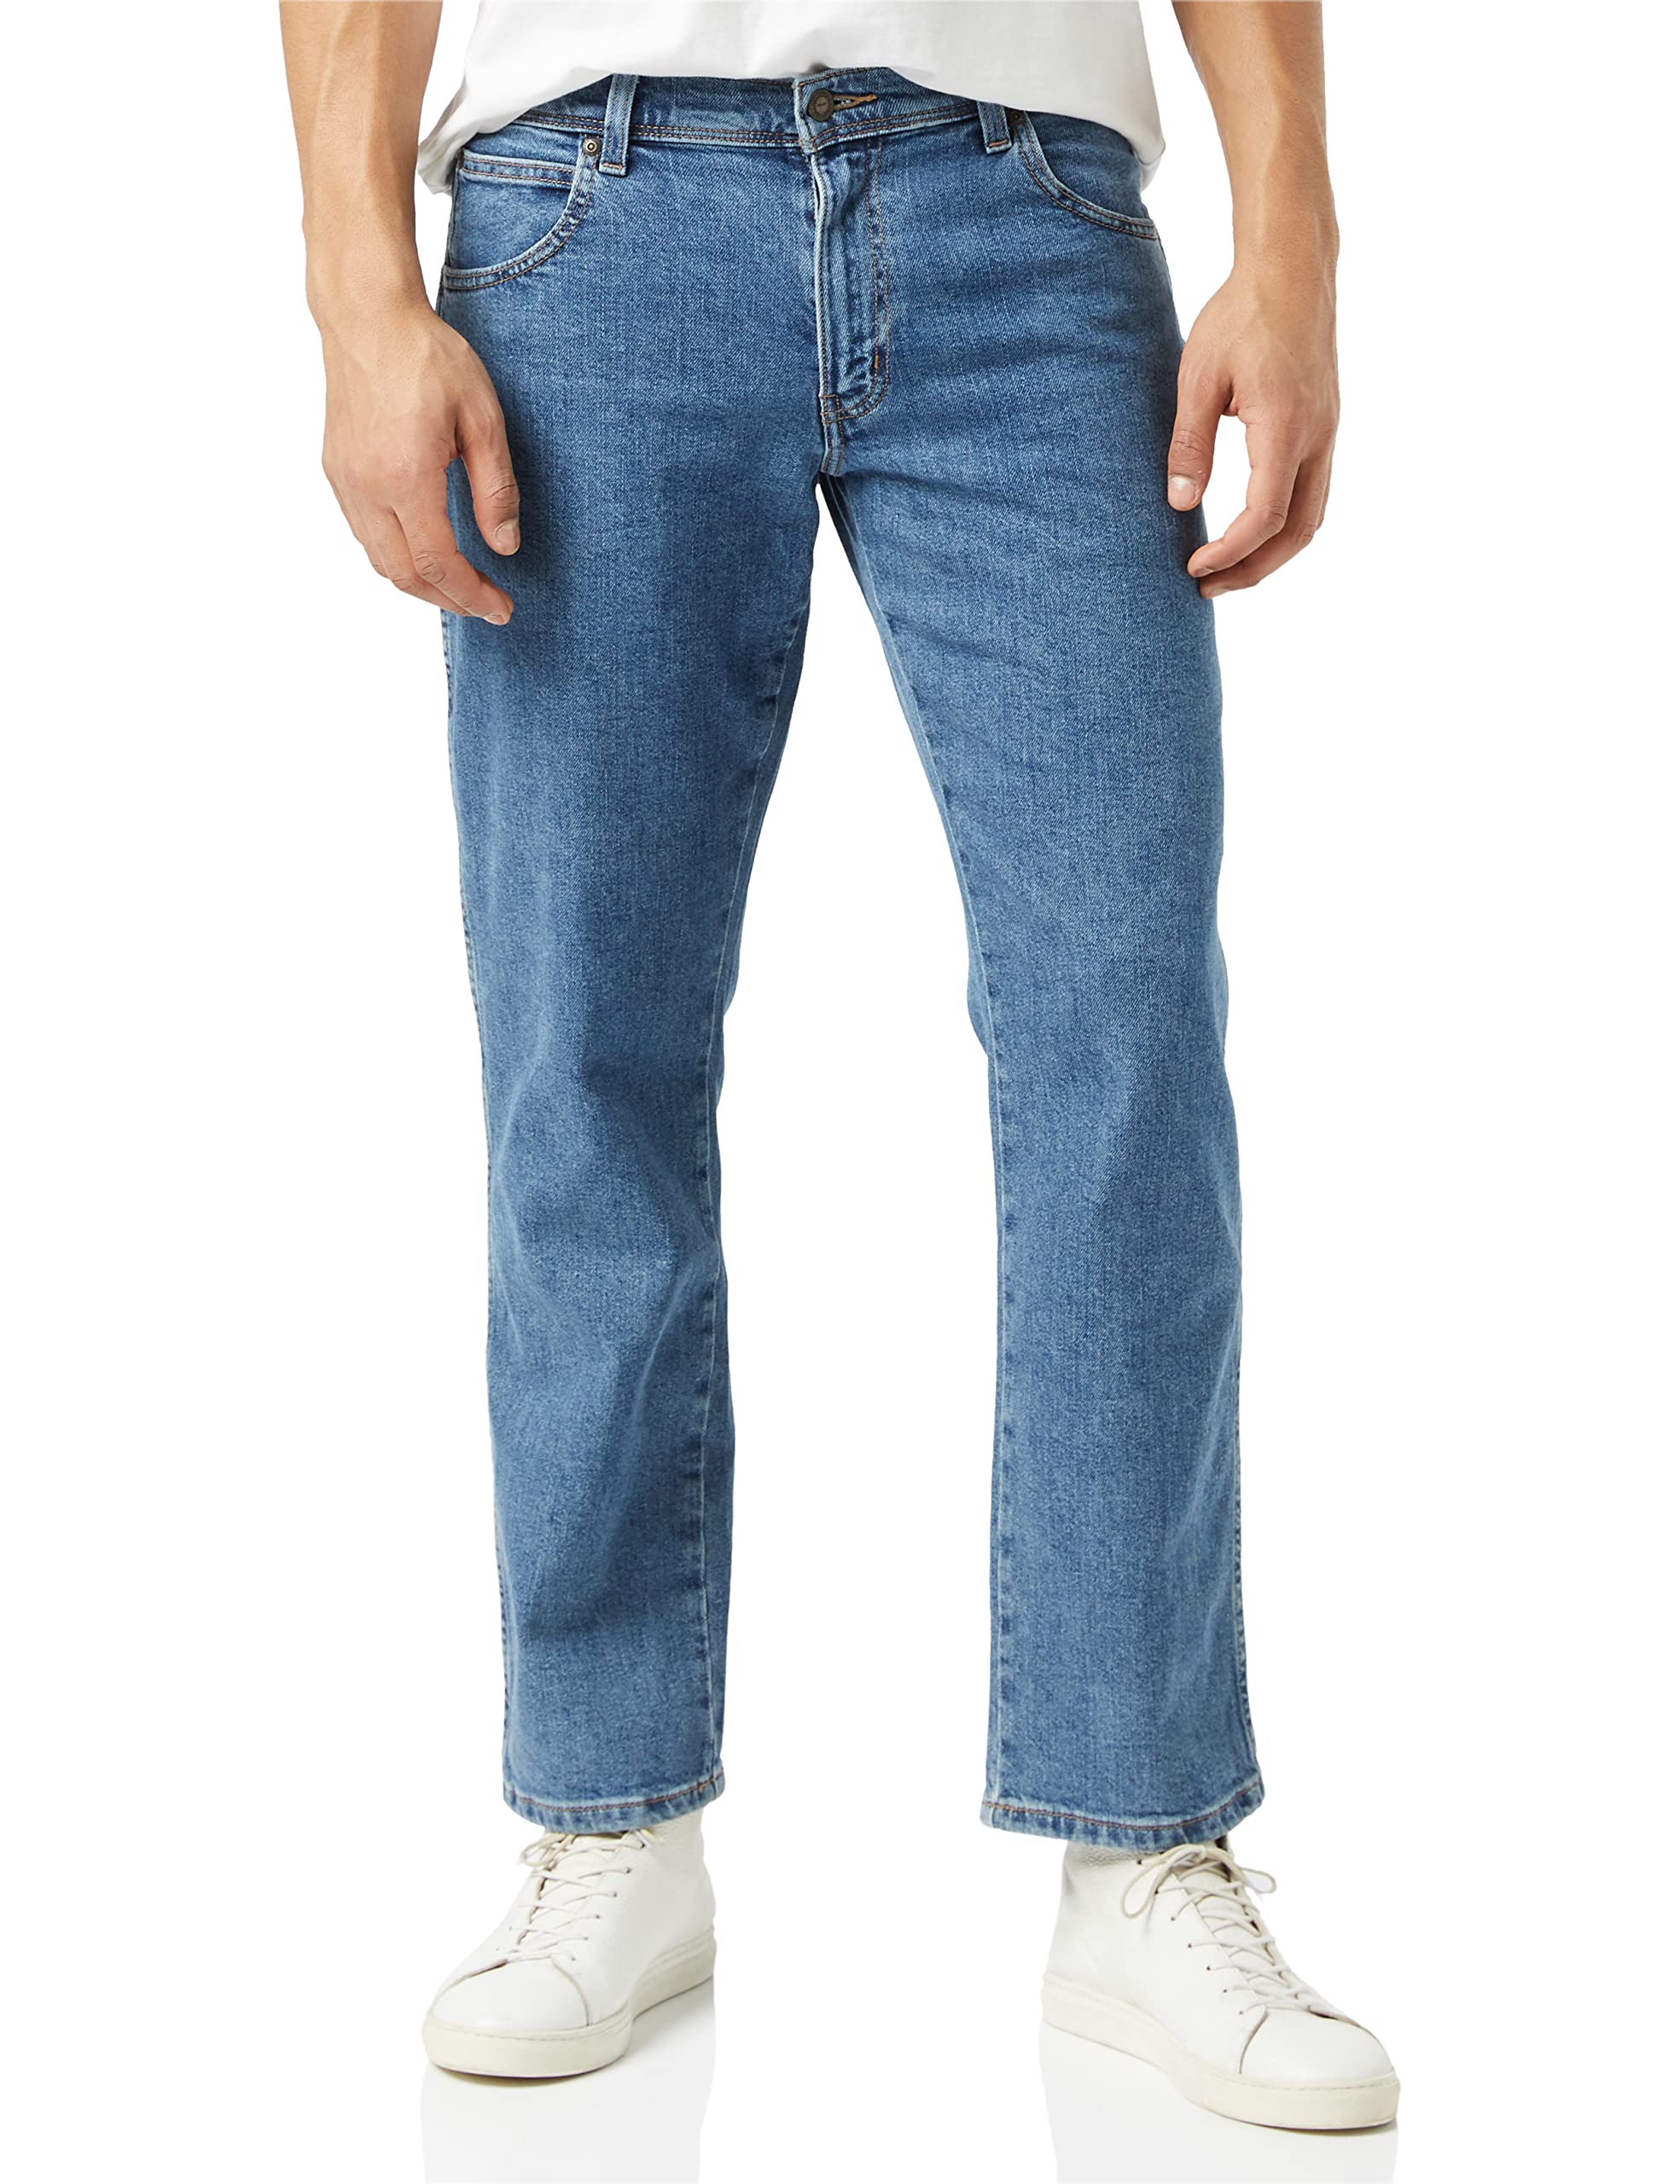 Wrangler Herren Regular Fit' Jeans, Blau (Stonewash), 38W / 34L EU